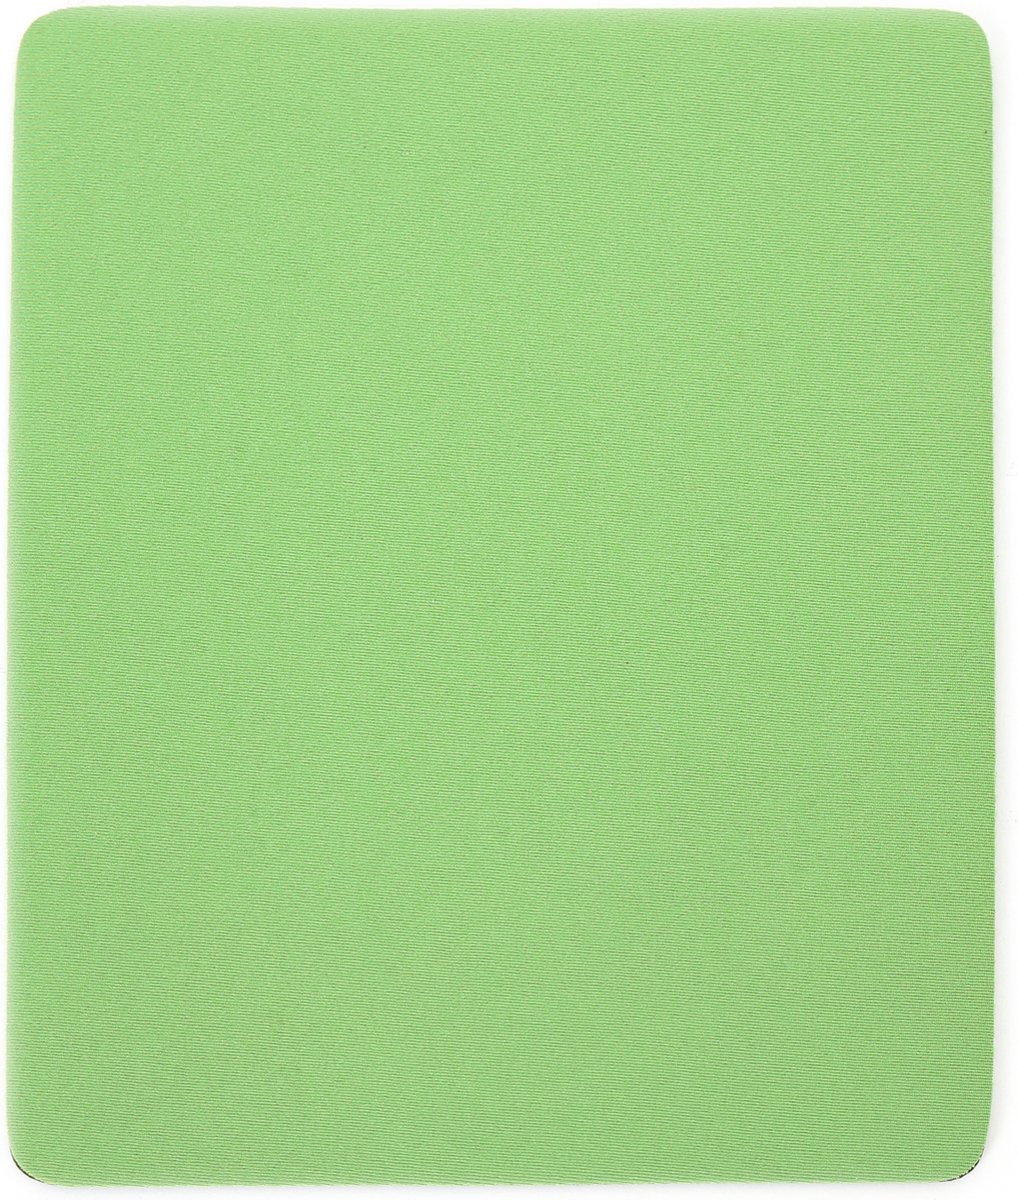 Omega OMPFGR Muismat 18x22x0.2cm - Groen